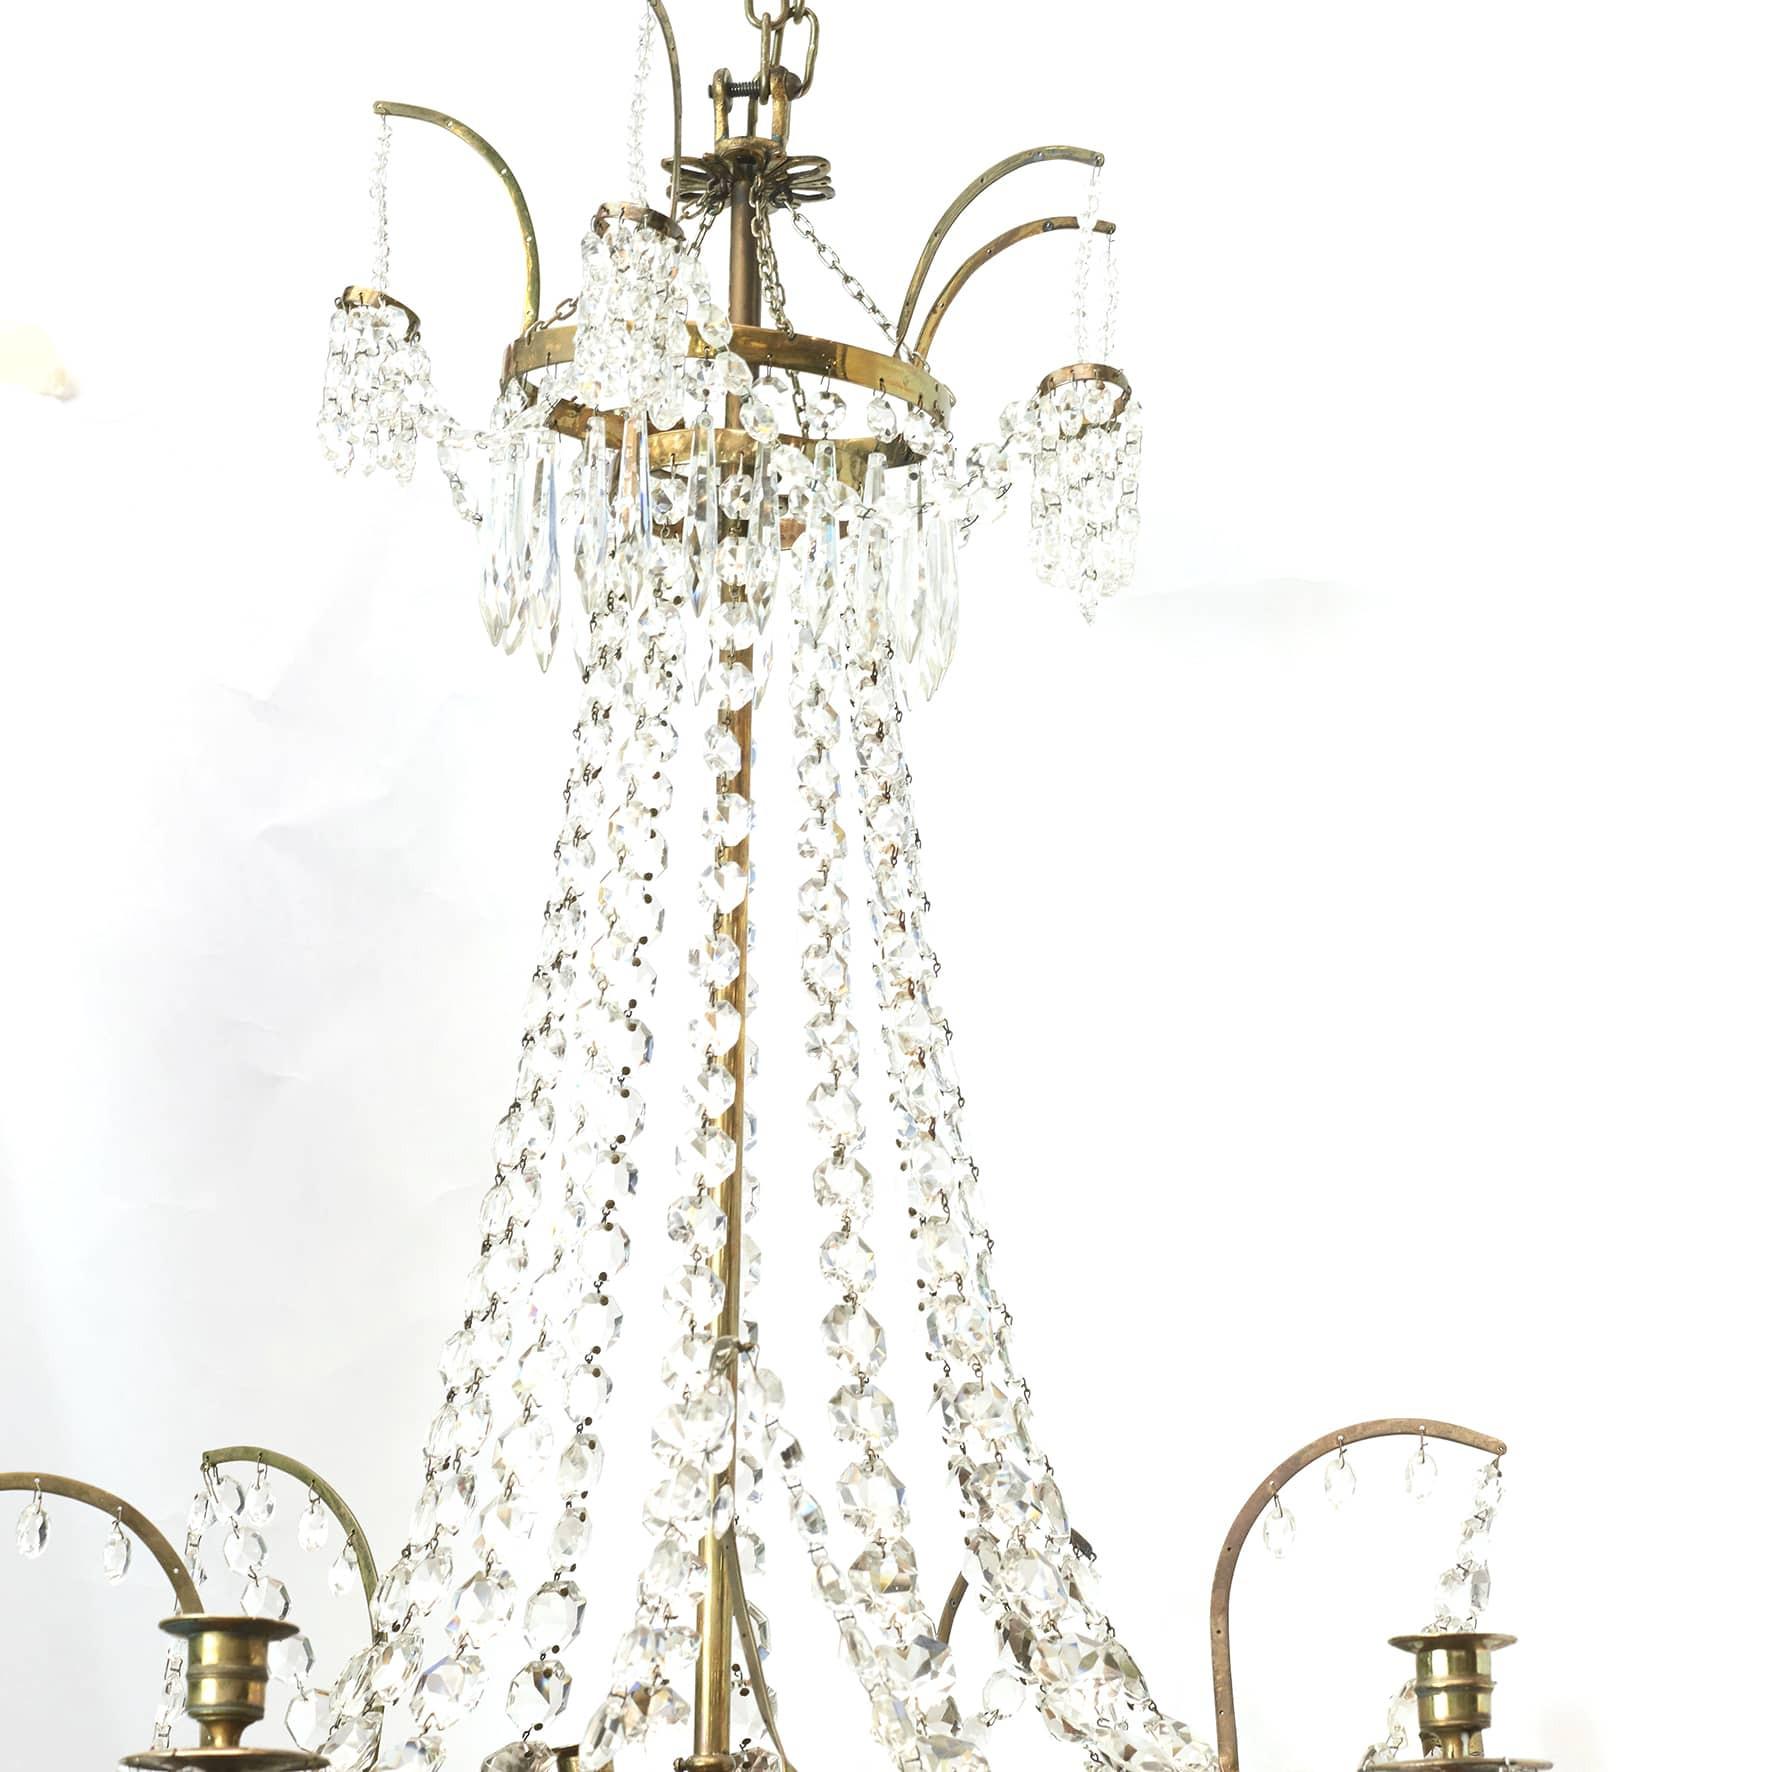 Elégant lustre Louis XVI avec Prismes en cristal.

Cadre en laiton poli avec bras à 6 lumières et arrondi réduit avec verre bleu.
Danemark 1780 - 1800.

Peut être électrifié.